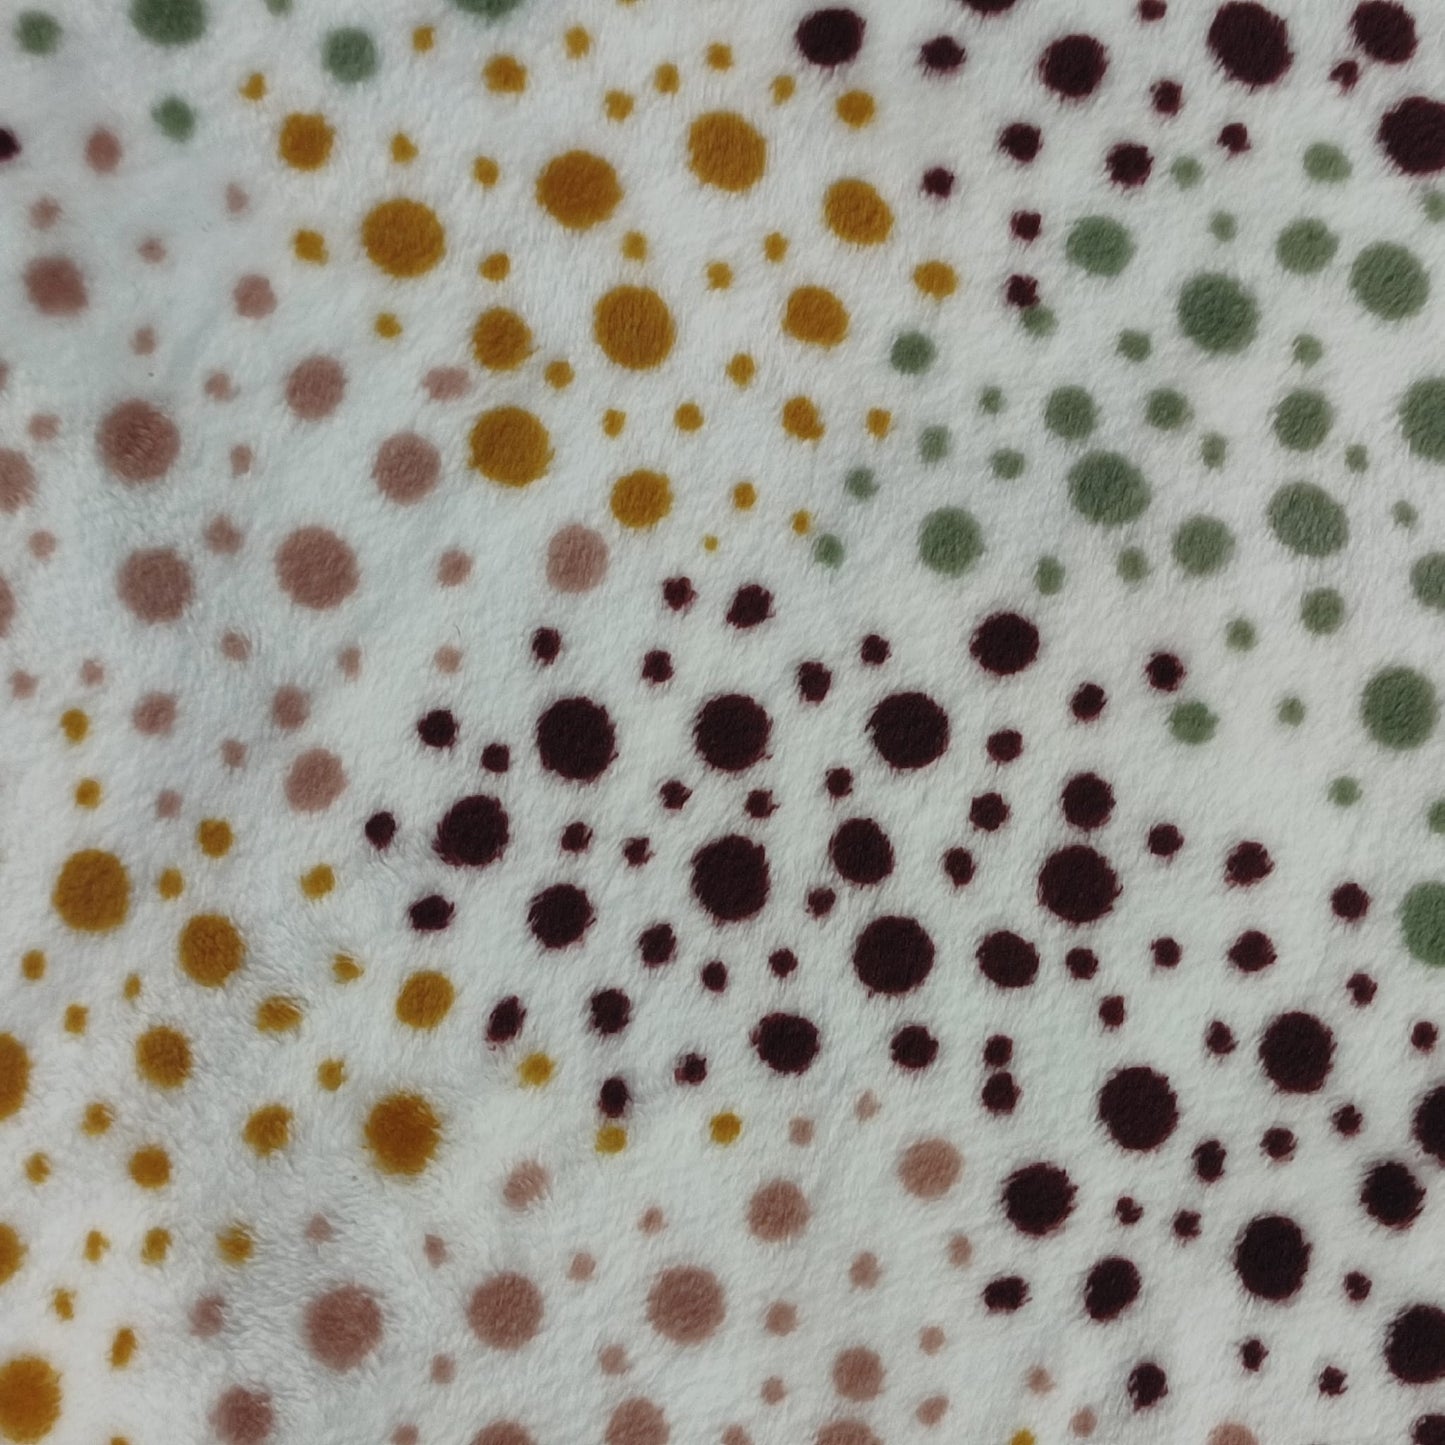 Coralina con puntos de colores sobre fondo blanco